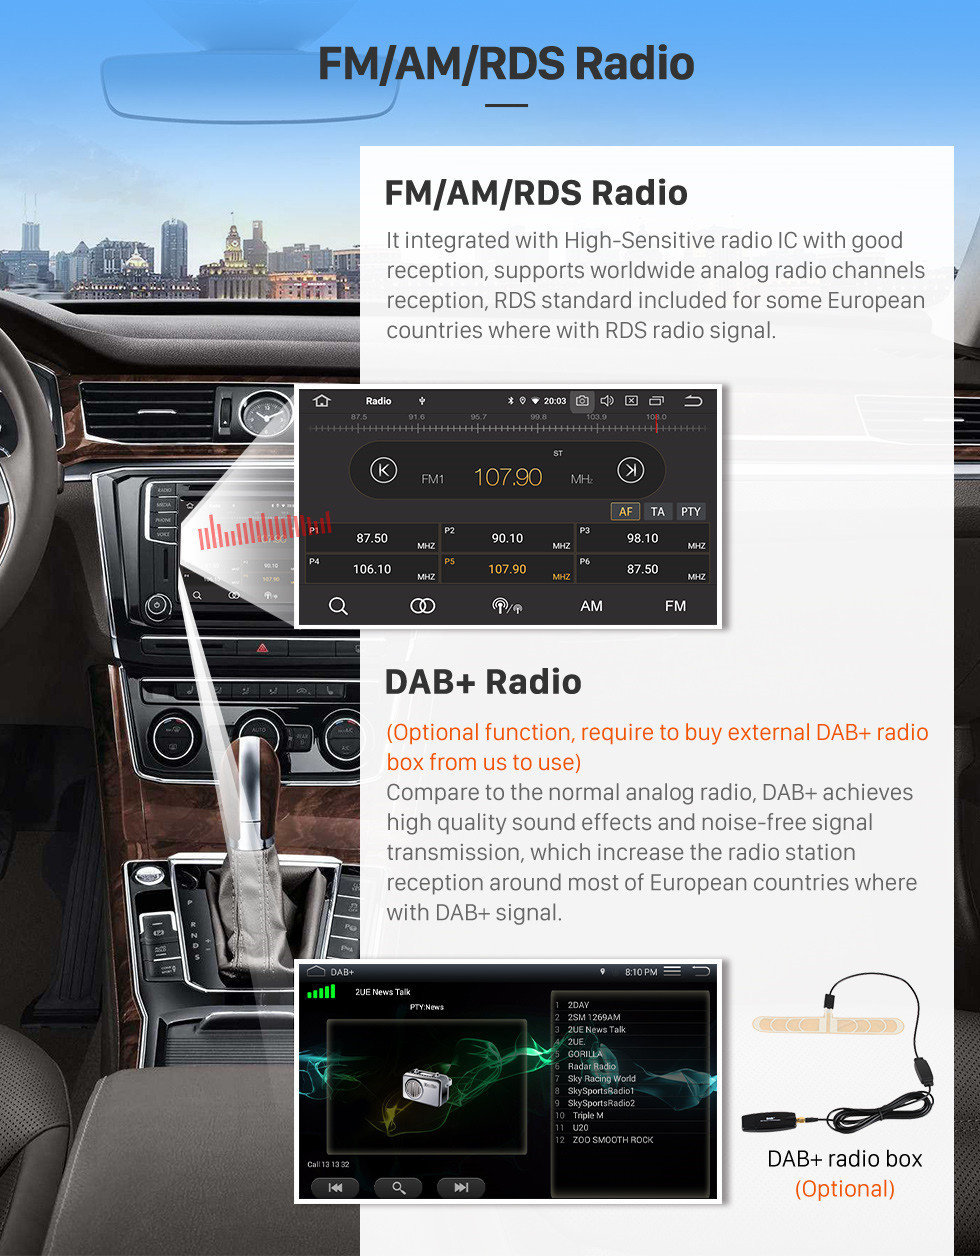 Seicane 2009 Fiat Perla Android 11.0 9 polegadas GPS Navegação Rádio Bluetooth HD Touchscreen USB Suporte Carplay DVR DAB + OBD2 SWC